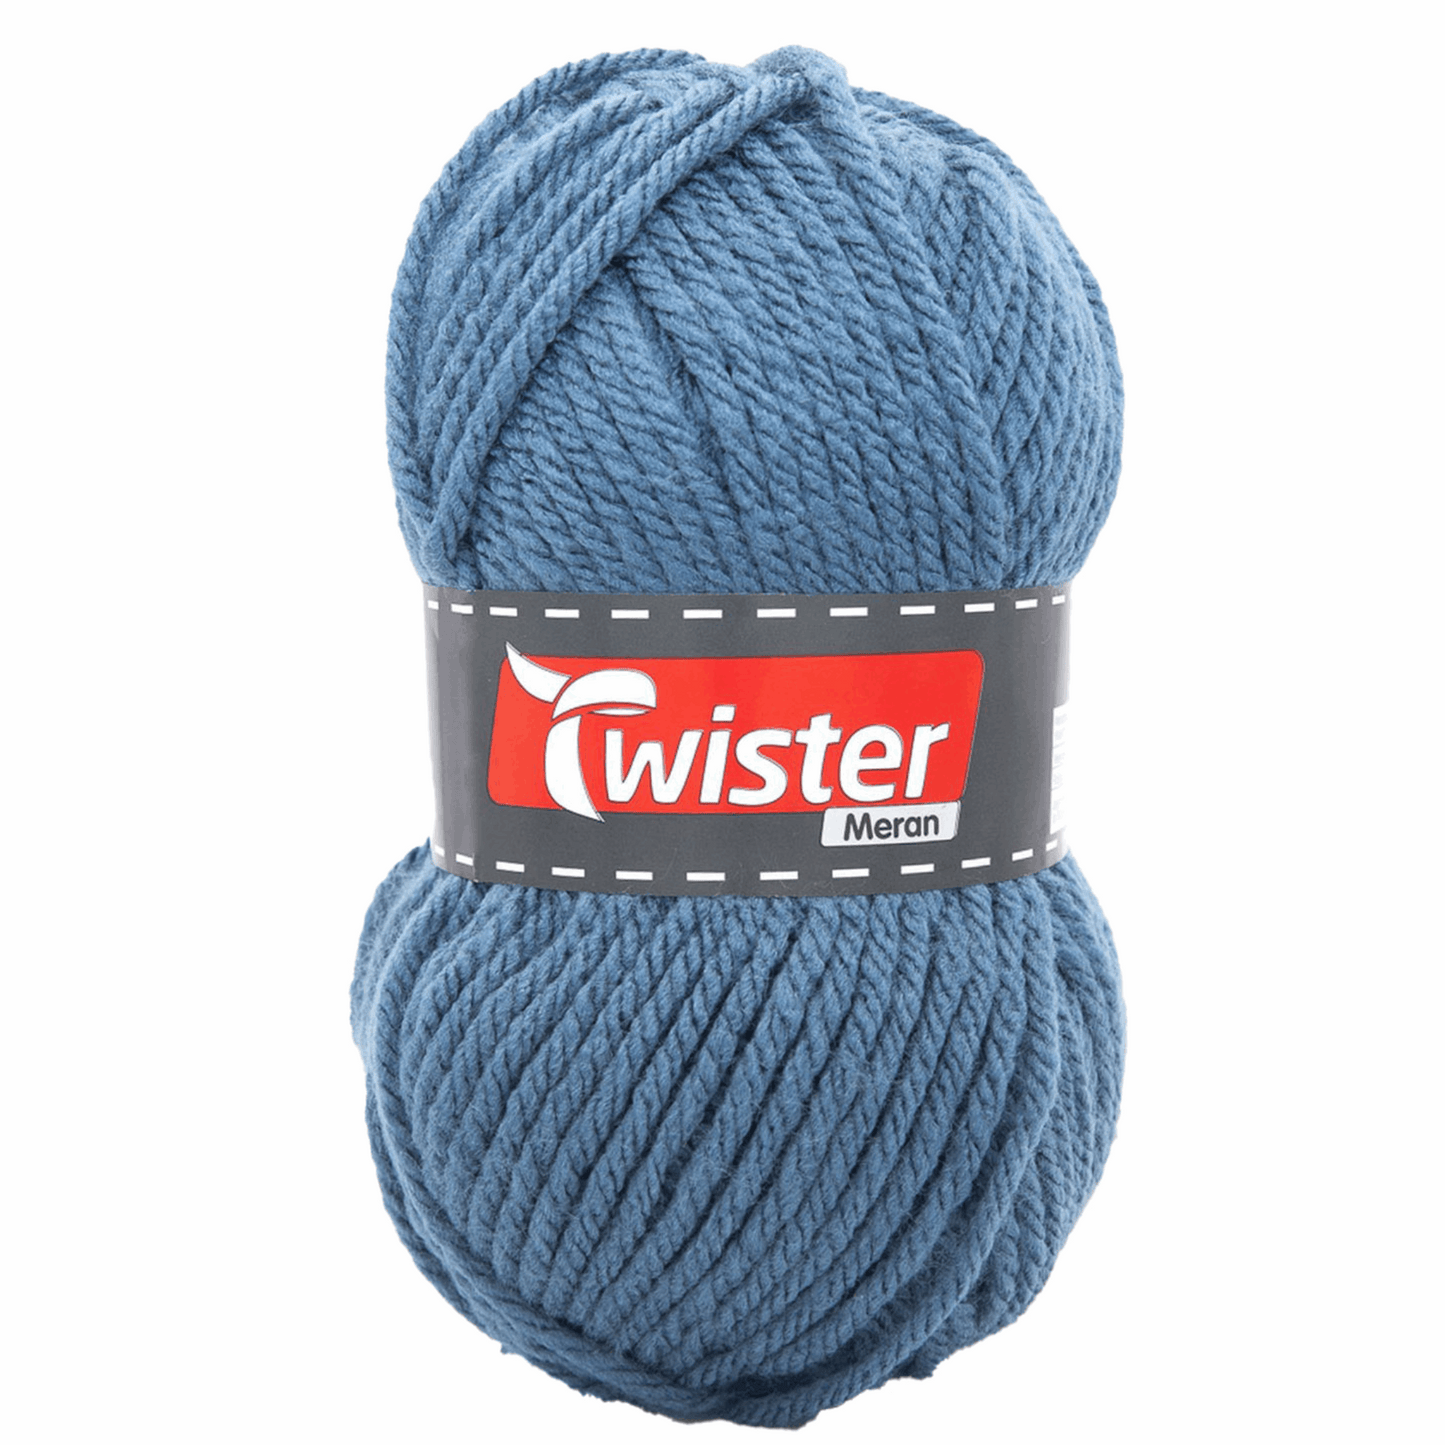 Twister Meran 100g, 98534, color jeans-blue 54